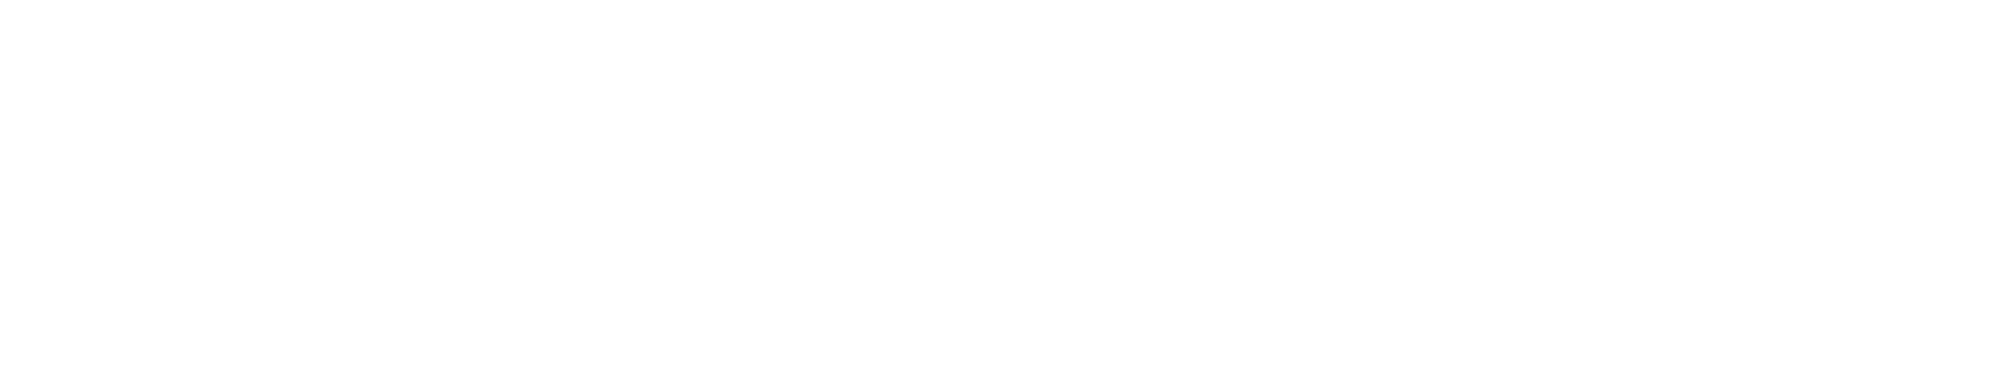 W. P. Carey Autumn 2023 logo